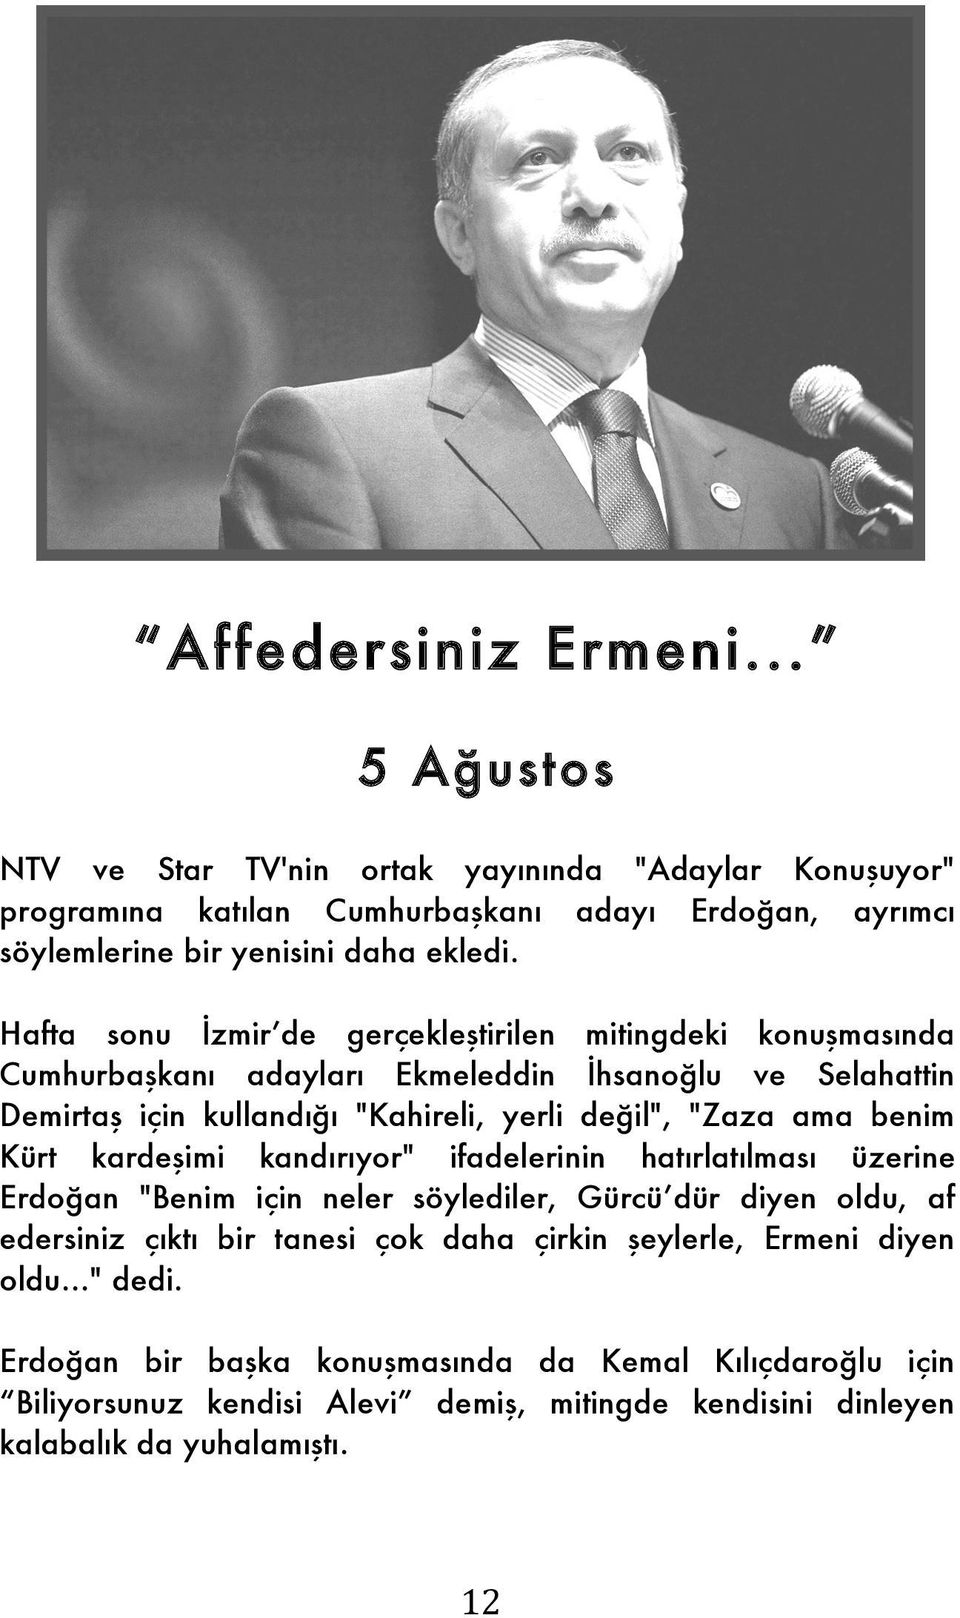 benim Kürt kardeşimi kandırıyor" ifadelerinin hatırlatılması üzerine Erdoğan "Benim için neler söylediler, Gürcü dür diyen oldu, af edersiniz çıktı bir tanesi çok daha çirkin